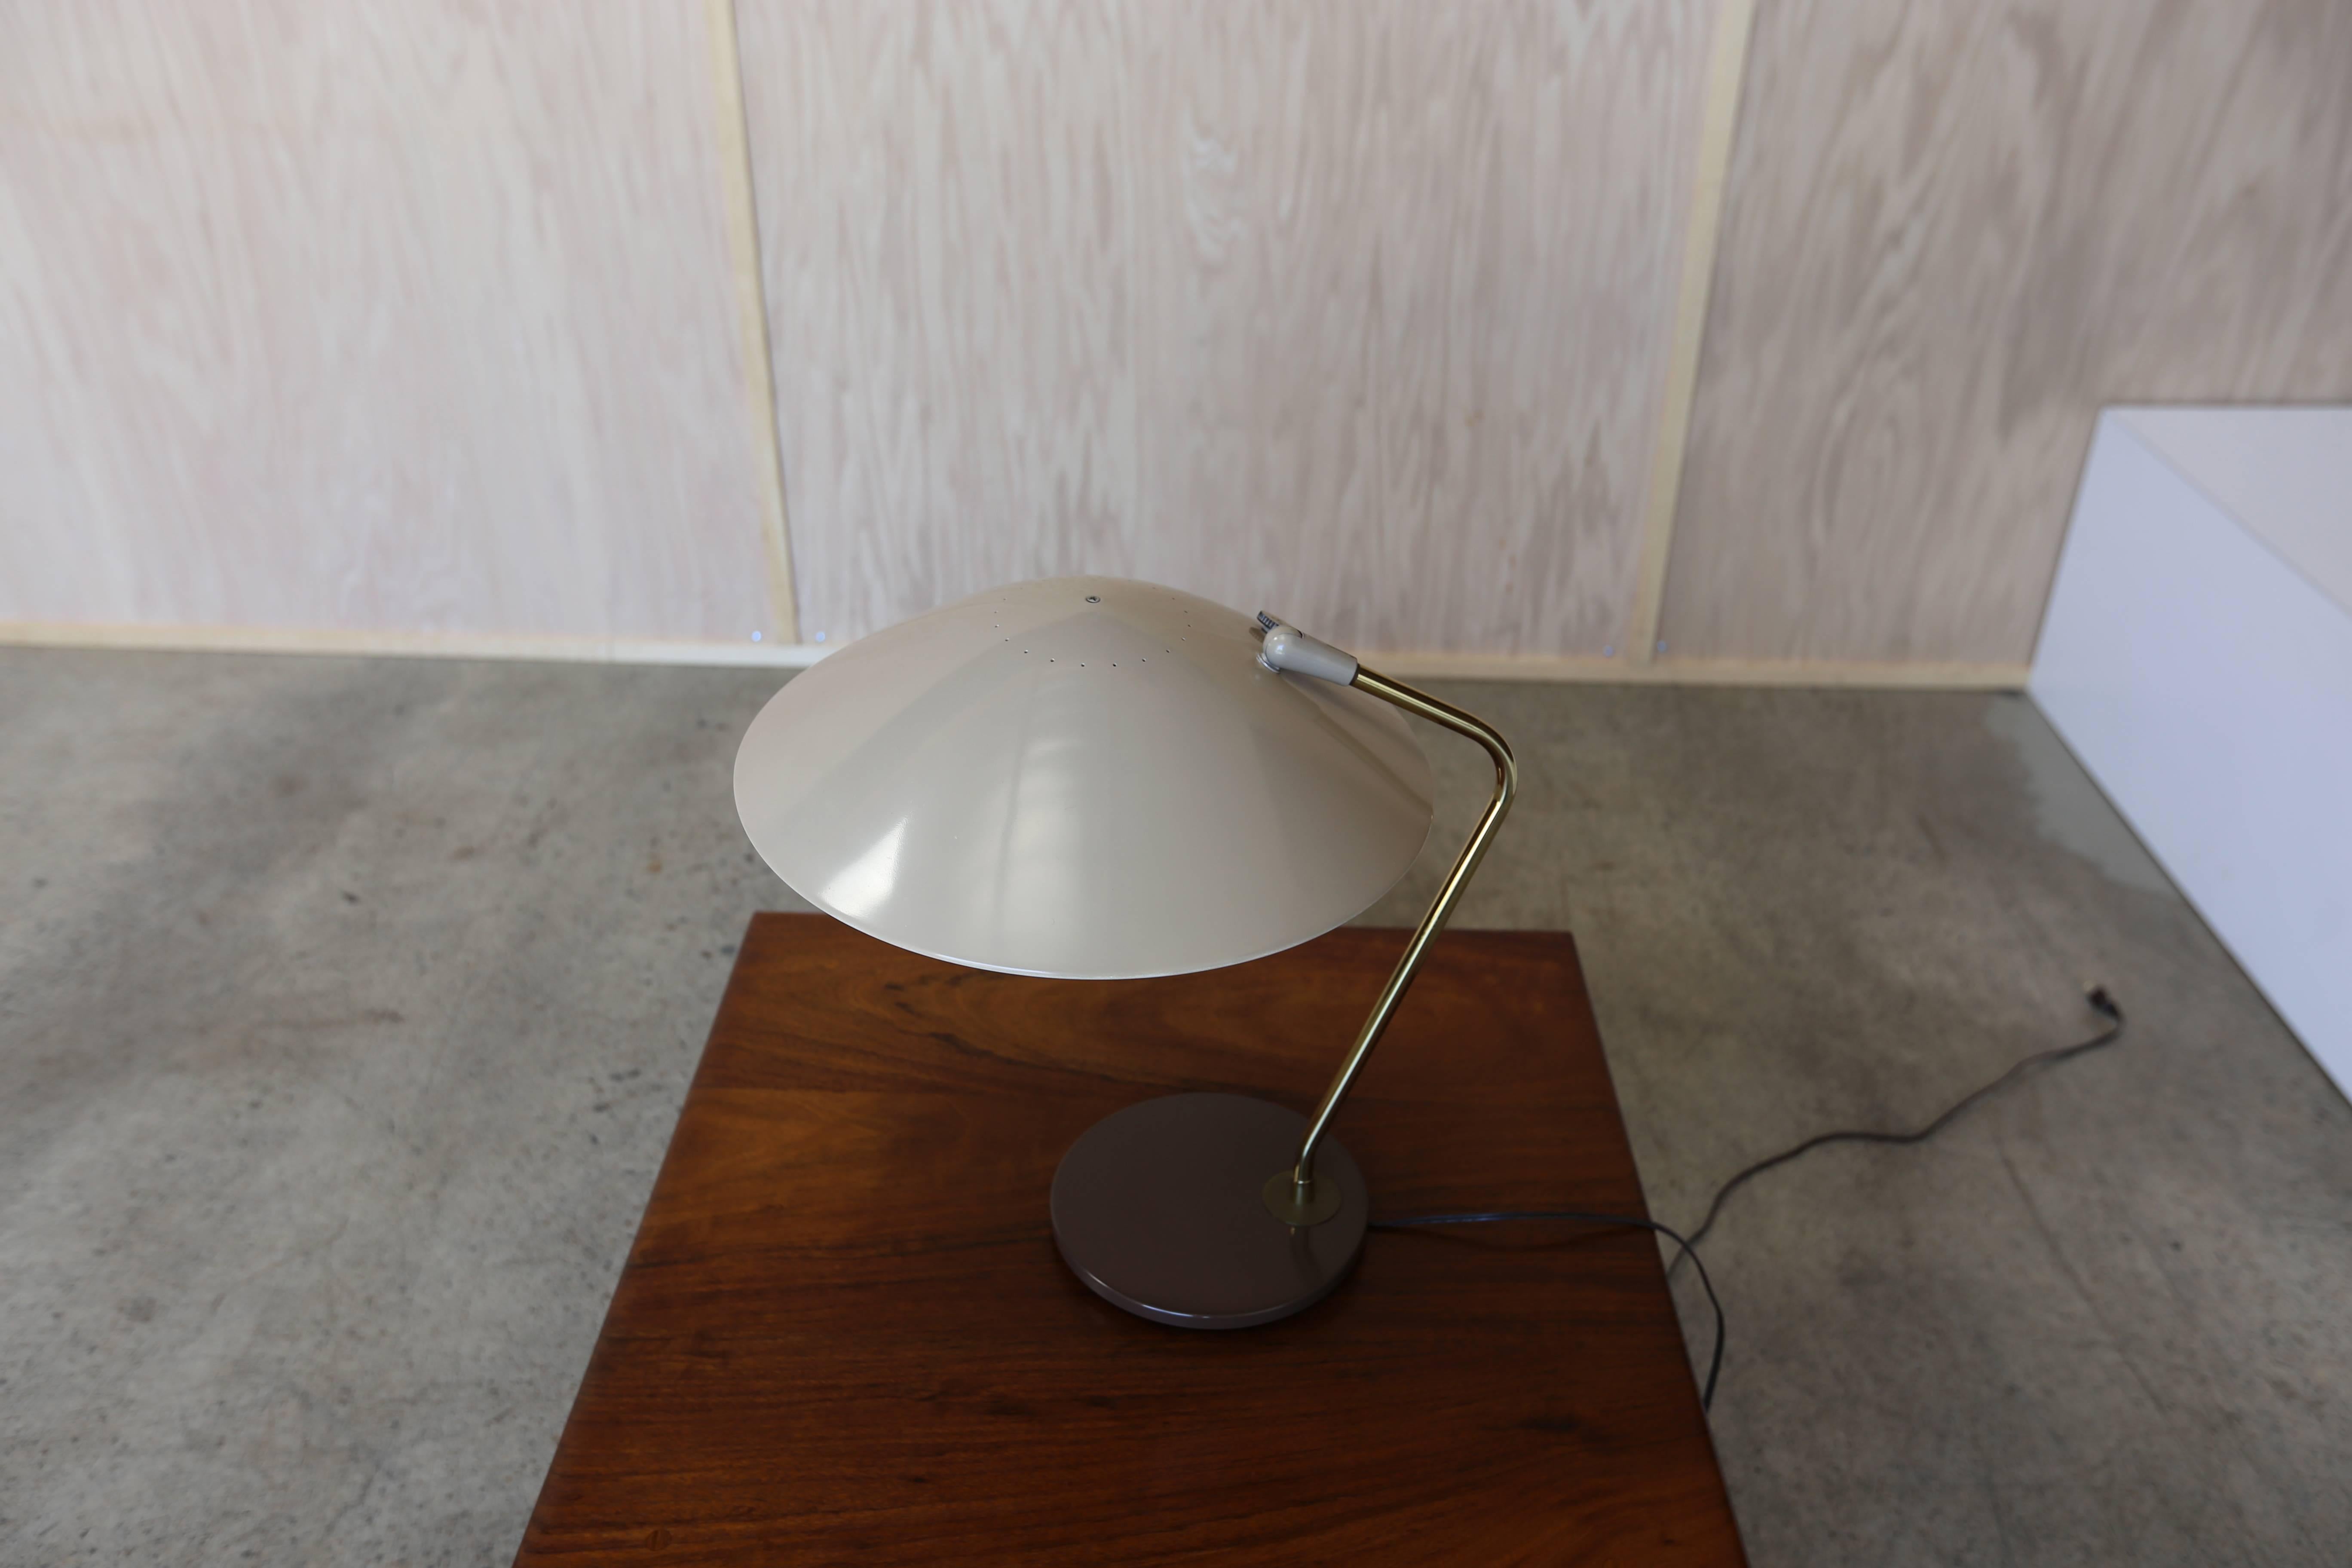 Desk lamp by Gerald Thurston for Lightolier.